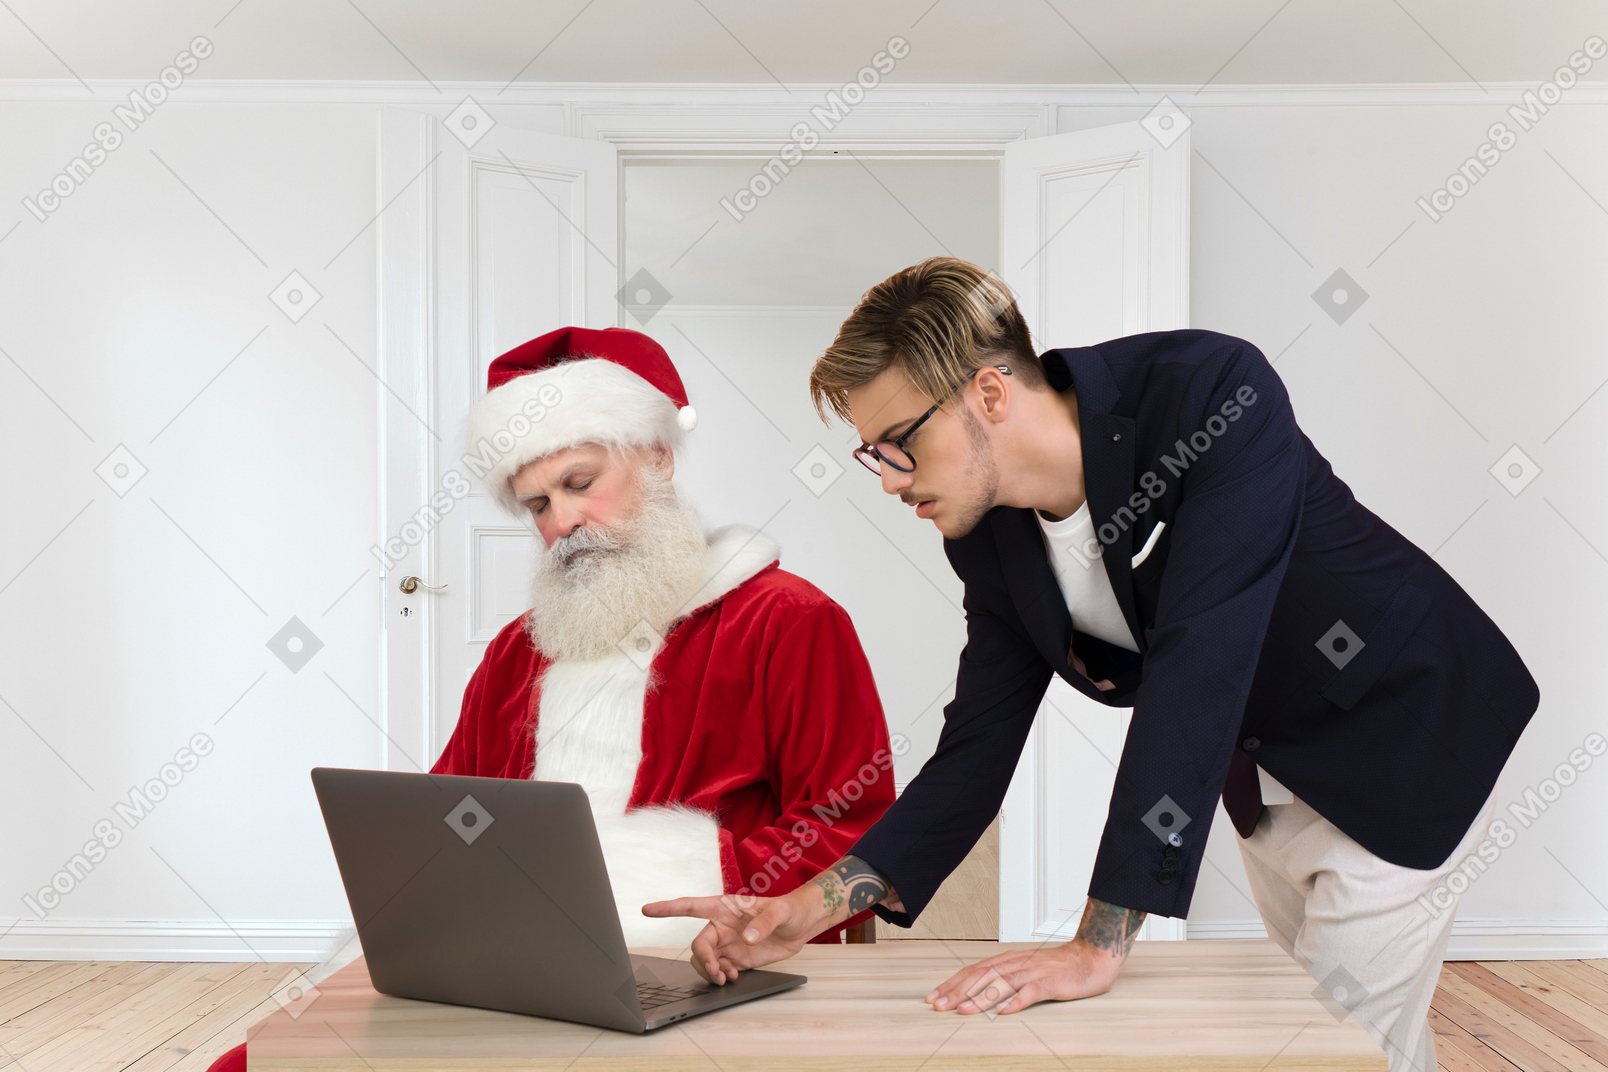 젊은 남자가 컴퓨터에서 정보를 확인하는 동안 산타가 졸음